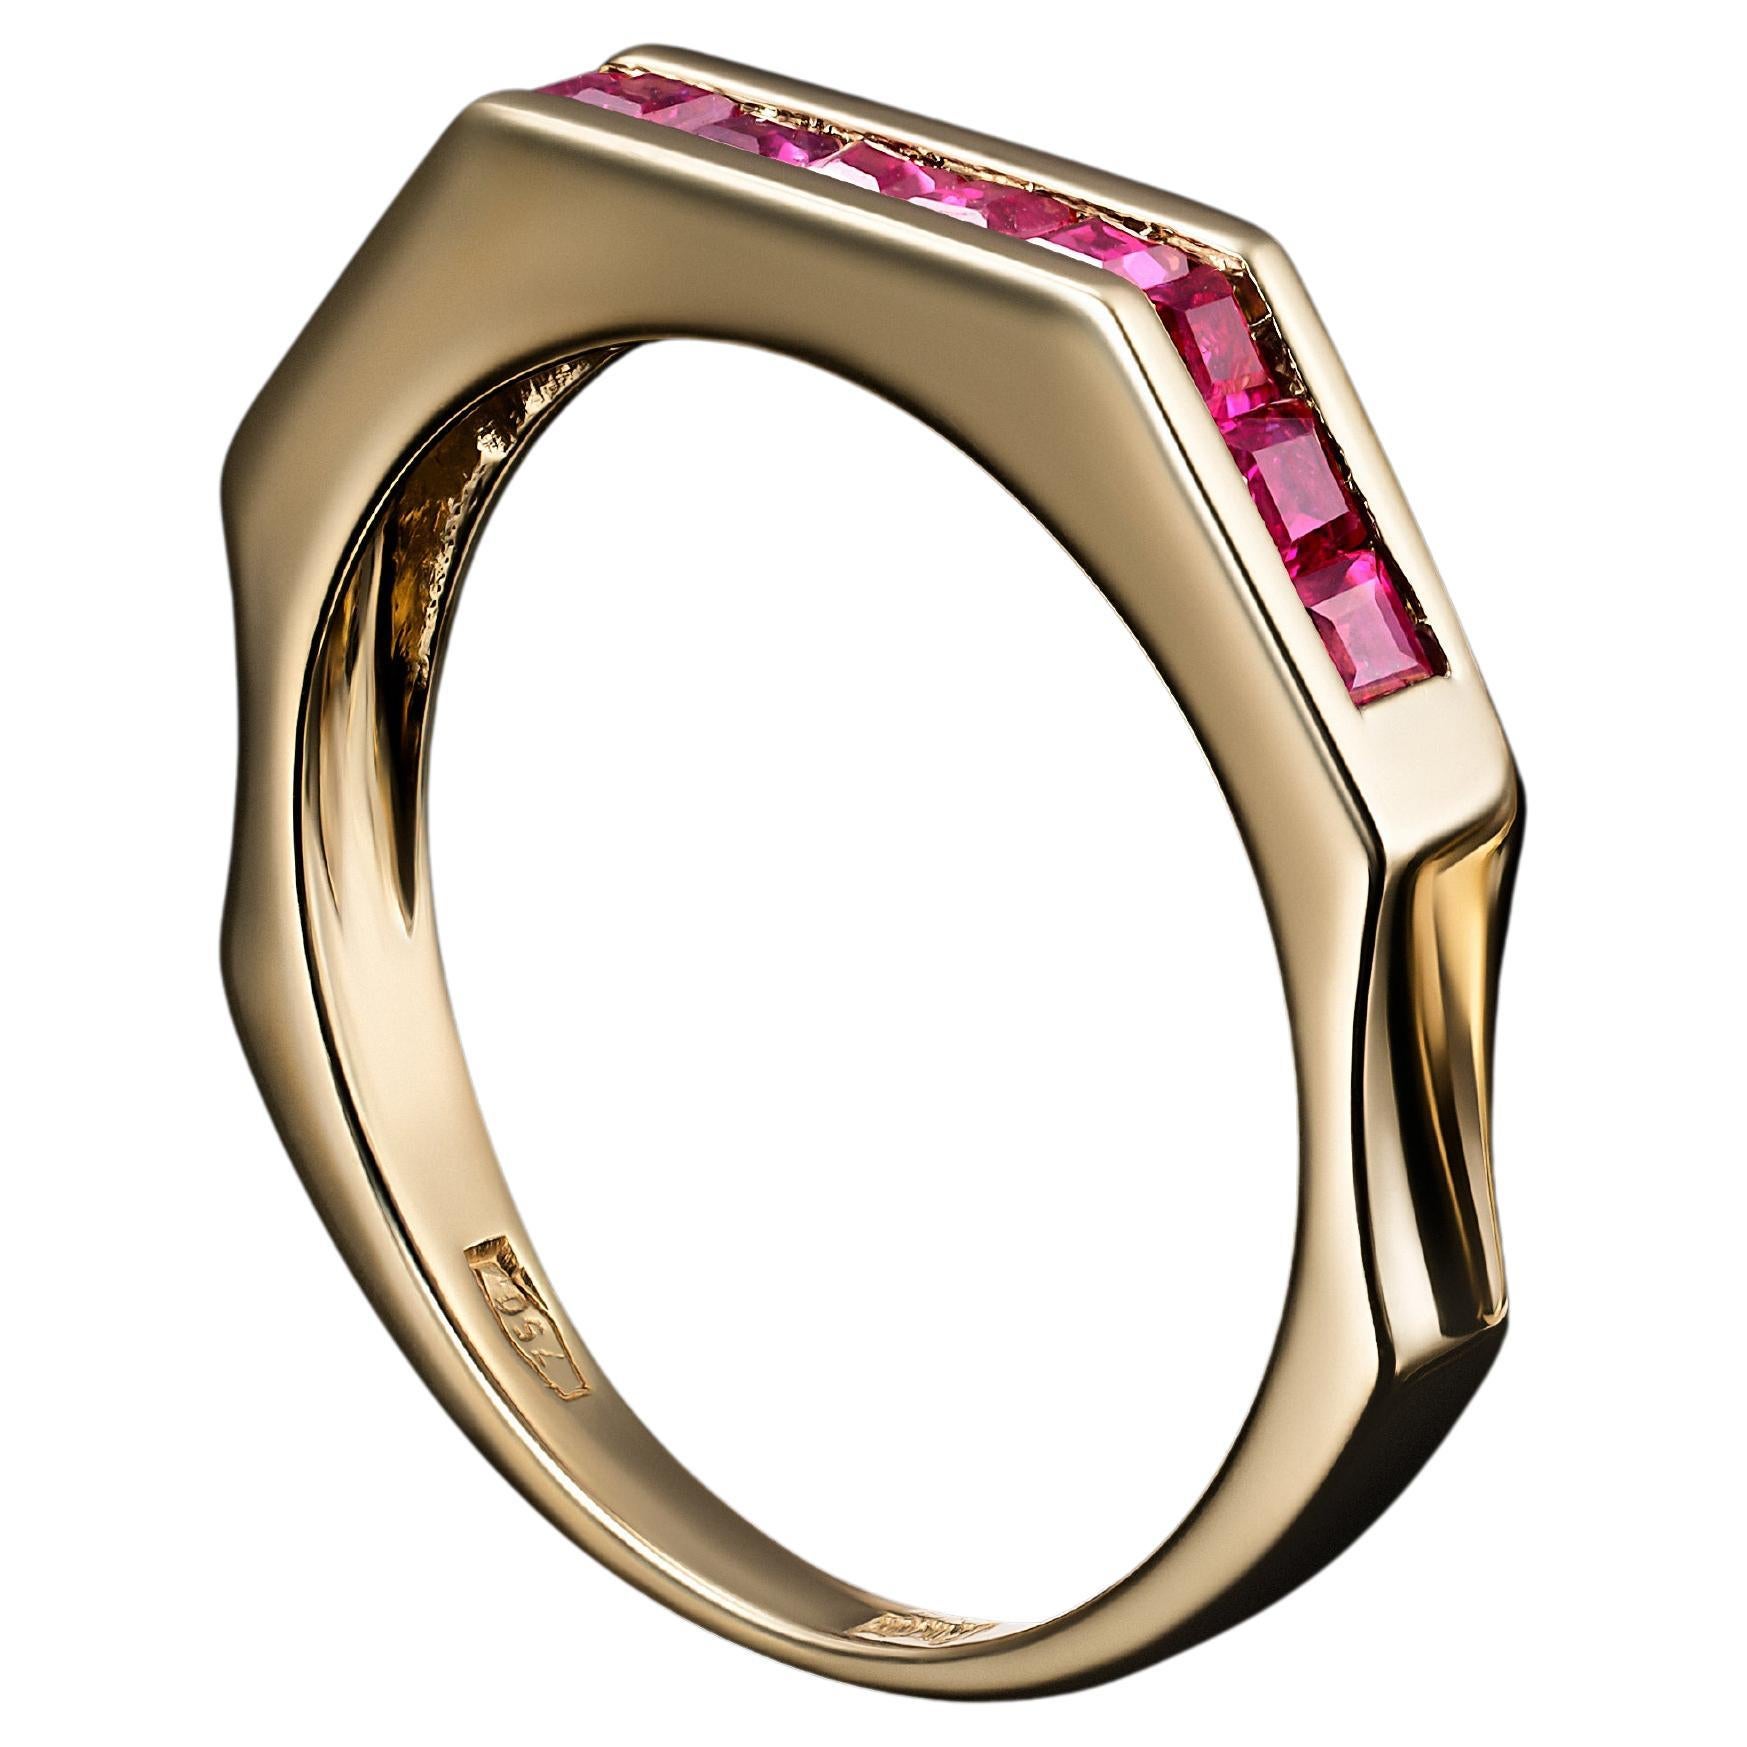 Ein wunderschöner, mit burmesischen Rubinen besetzter Ring im Art-Déco-Stil, der in den frühen 1990er Jahren von italienischen Meisterhandwerkern hergestellt wurde. 

Dieser in sorgfältiger Handarbeit gefertigte Ring aus 18 Karat Gelbgold strahlt